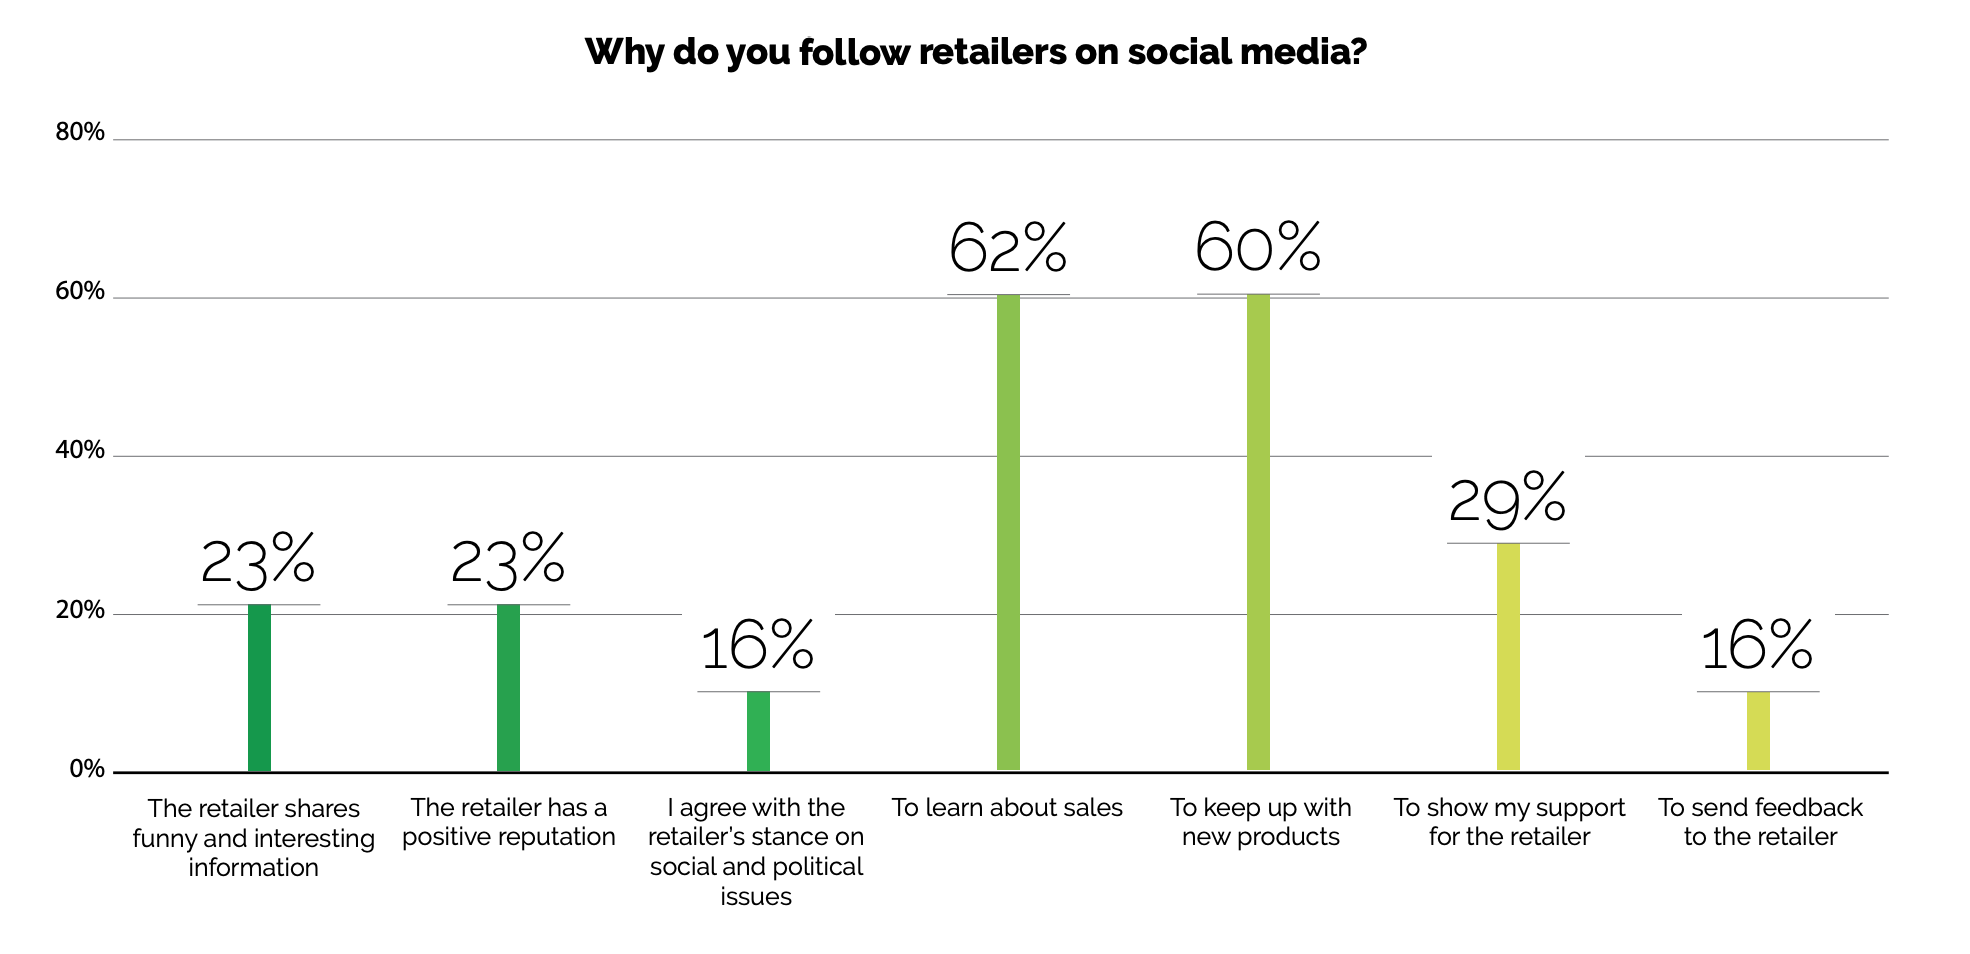 Les principales raisons pour lesquelles les consommateurs suivent et interagissent avec les marques sur les médias sociaux